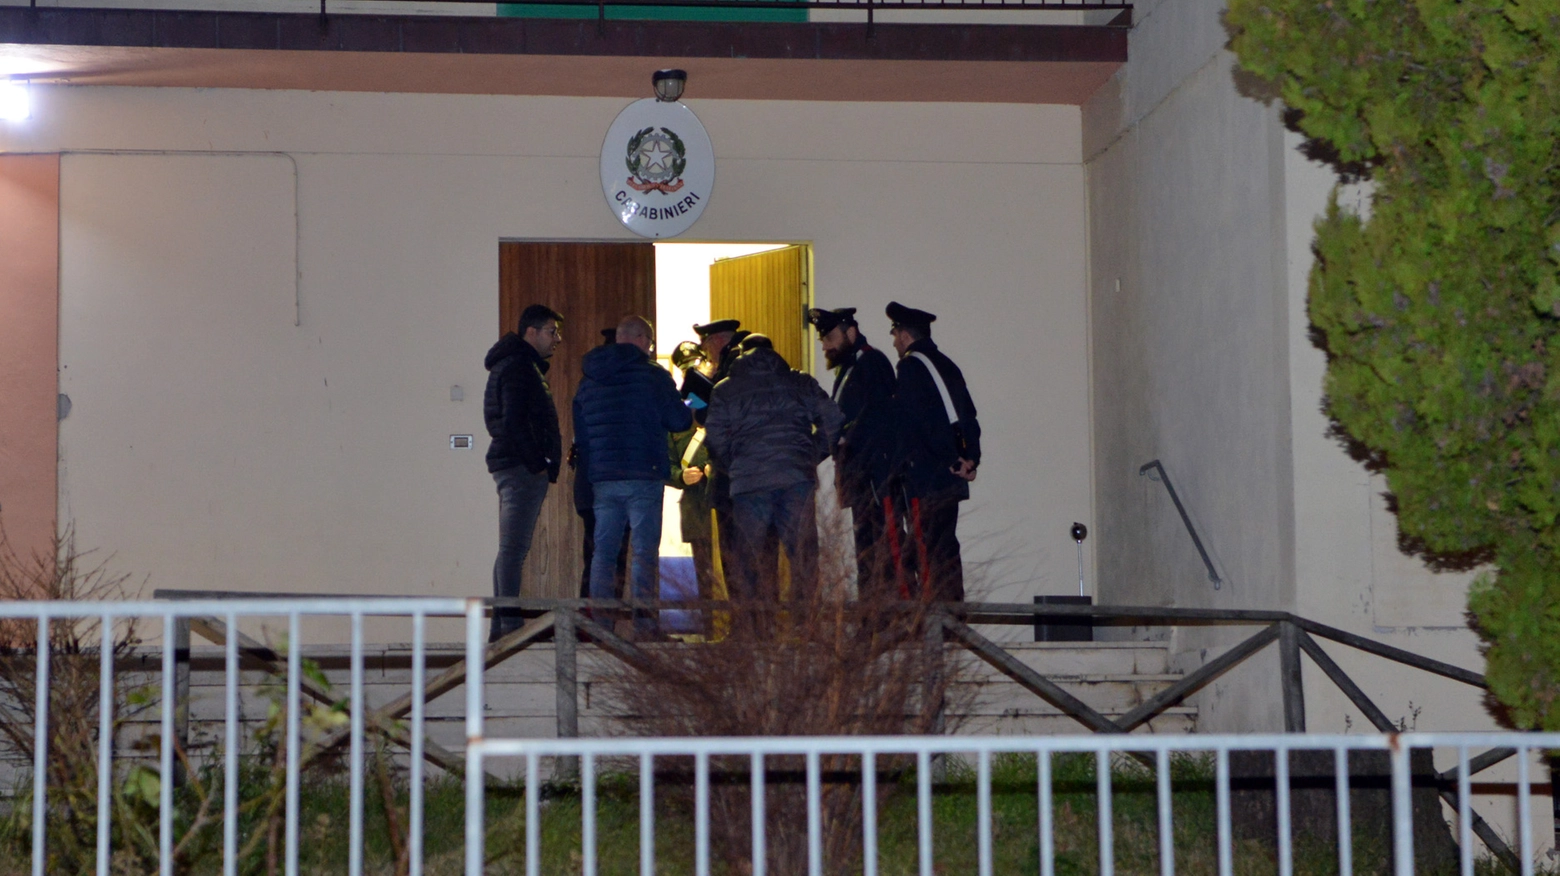 La caserma dei carabinieri dove il padre è stato interrogato (foto Binci)